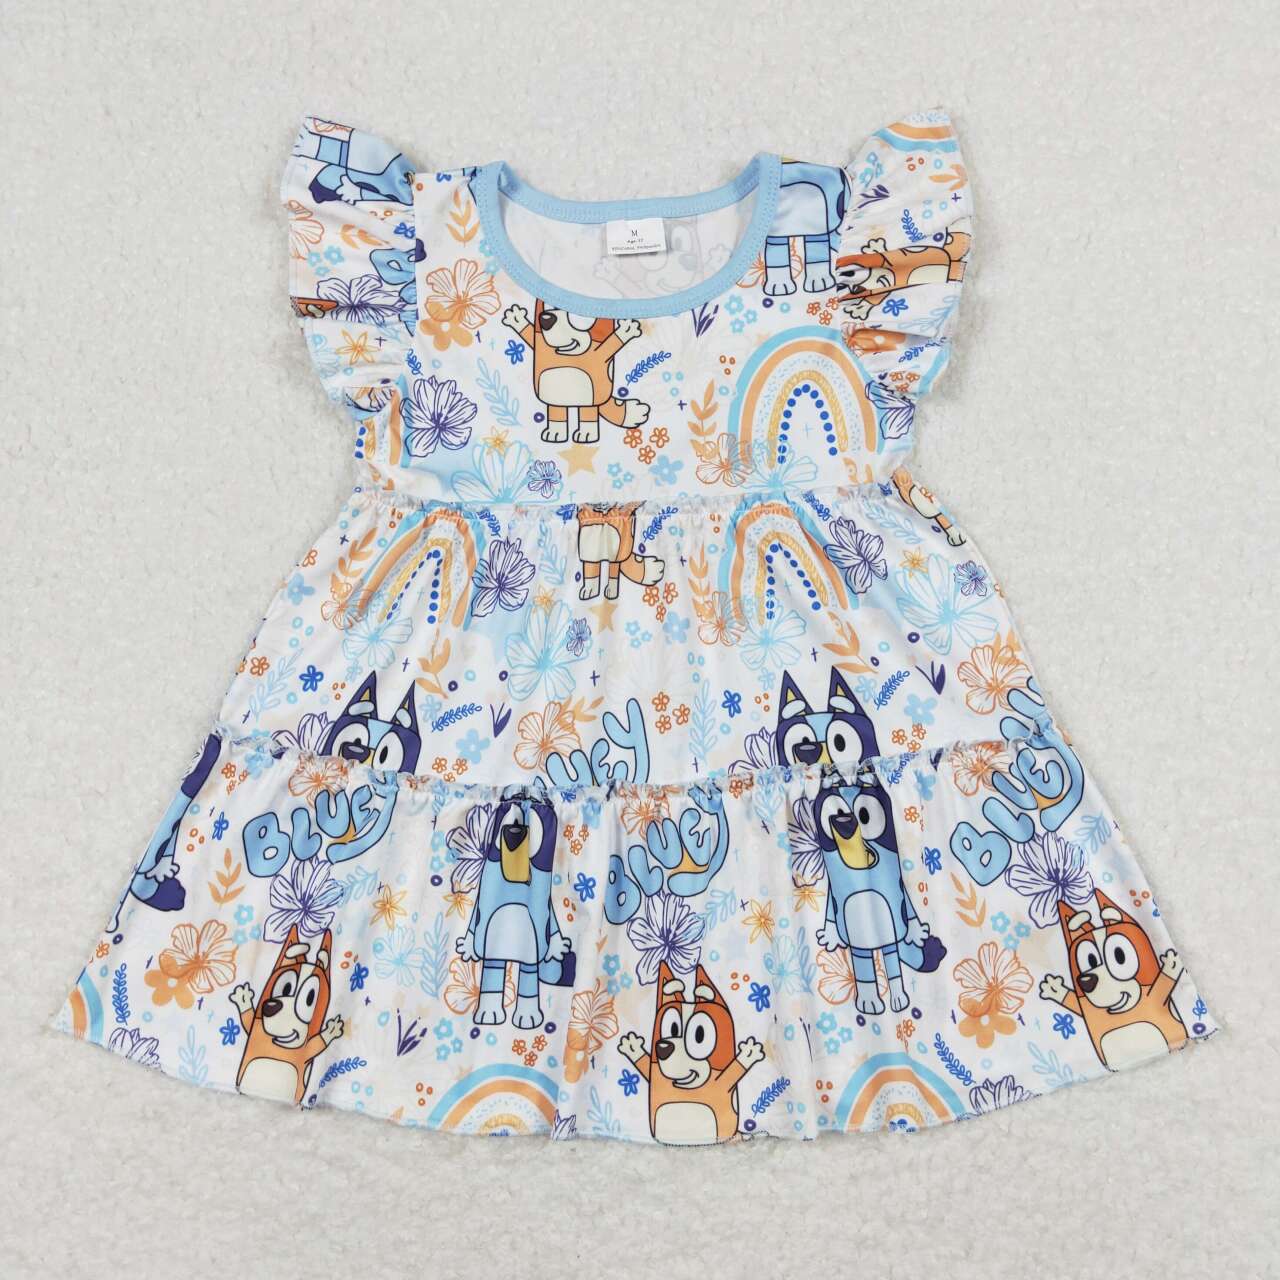 GSSO1170 Cartoon Dog Top Blue Buttons Shorts Girls Summer Clothes Set